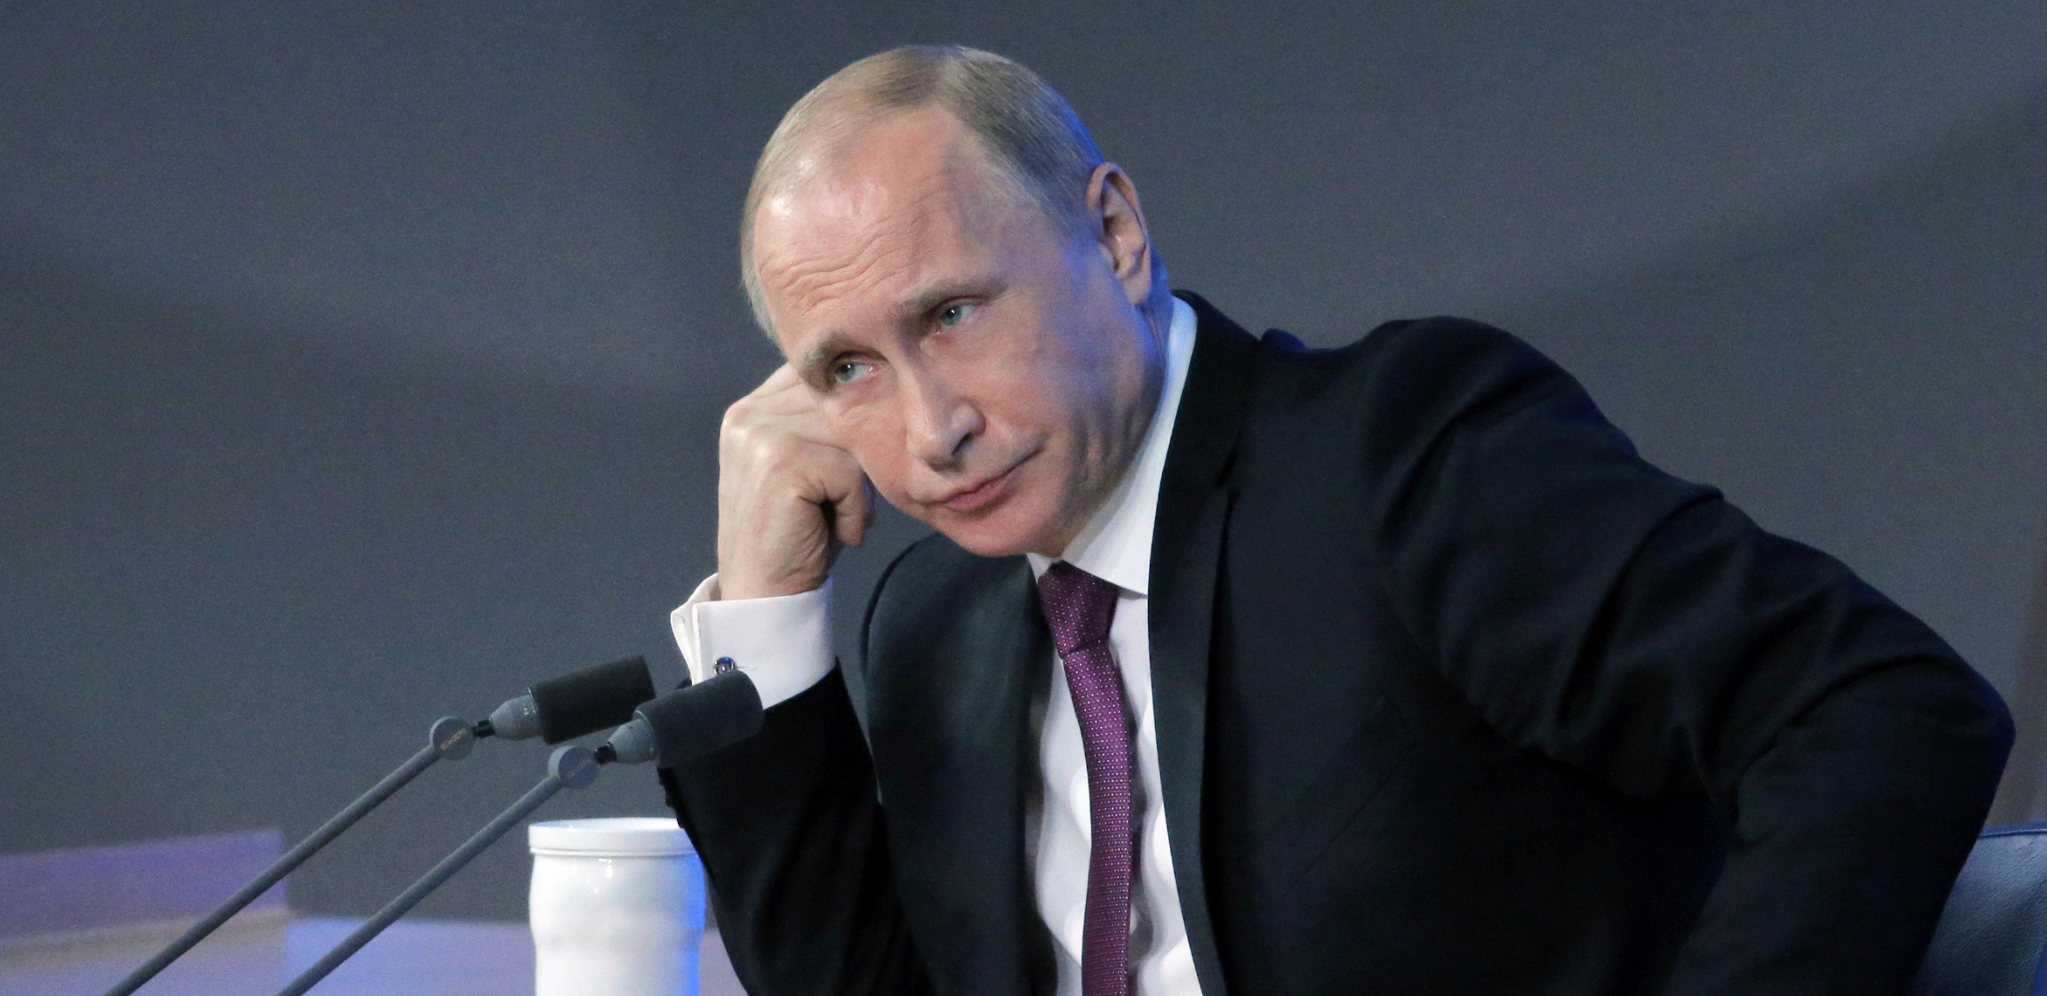 20 GODINA ROBIJE Putin potpisao rigorozni zakon za sve koji rade protiv interesa Rusije